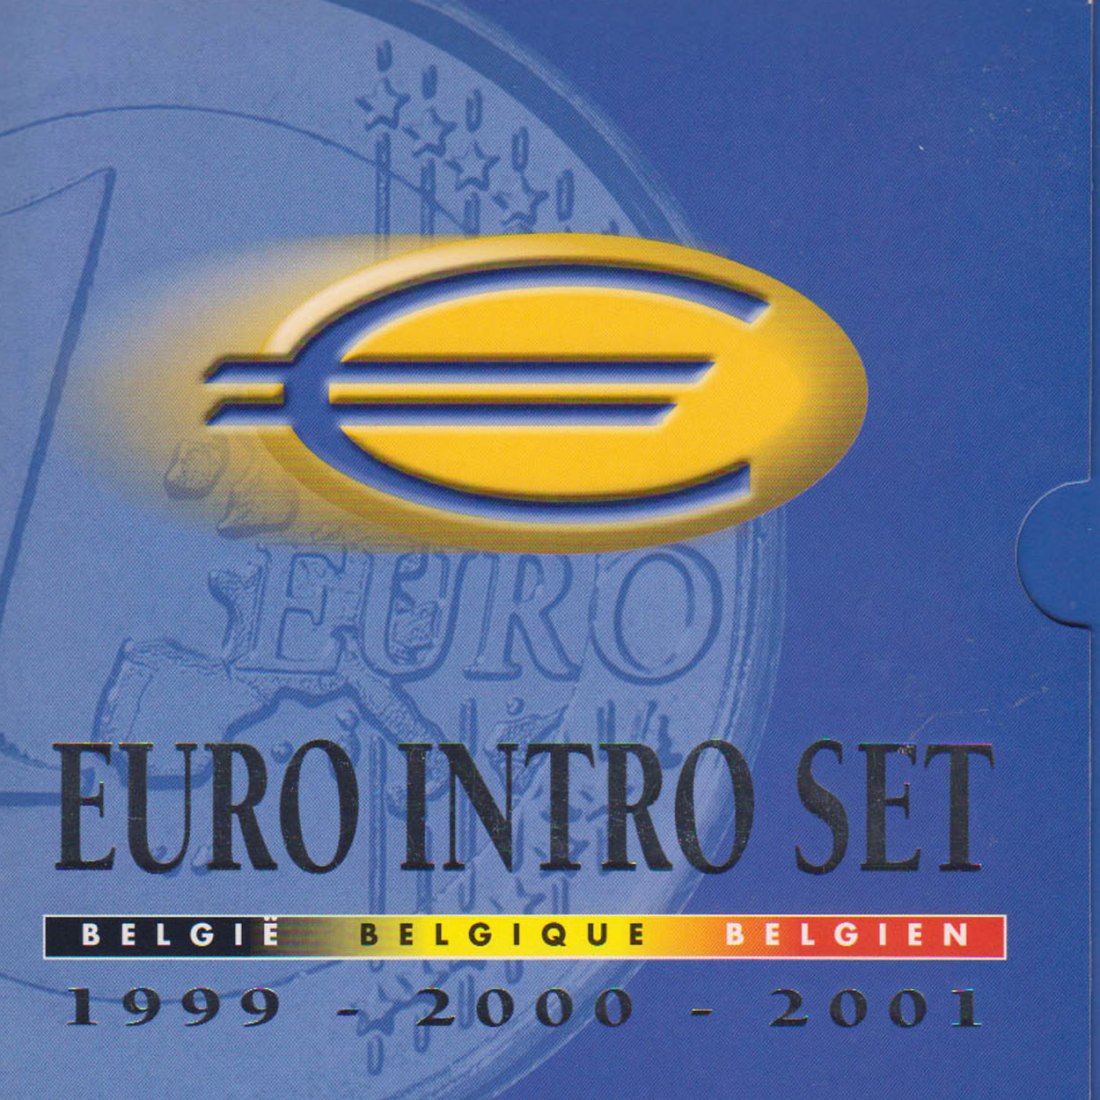  Offiz. KMS Belgien *Euro Intro Set* 1999-2001 14 Münzen nur im Intro Set nur 40.000St!   